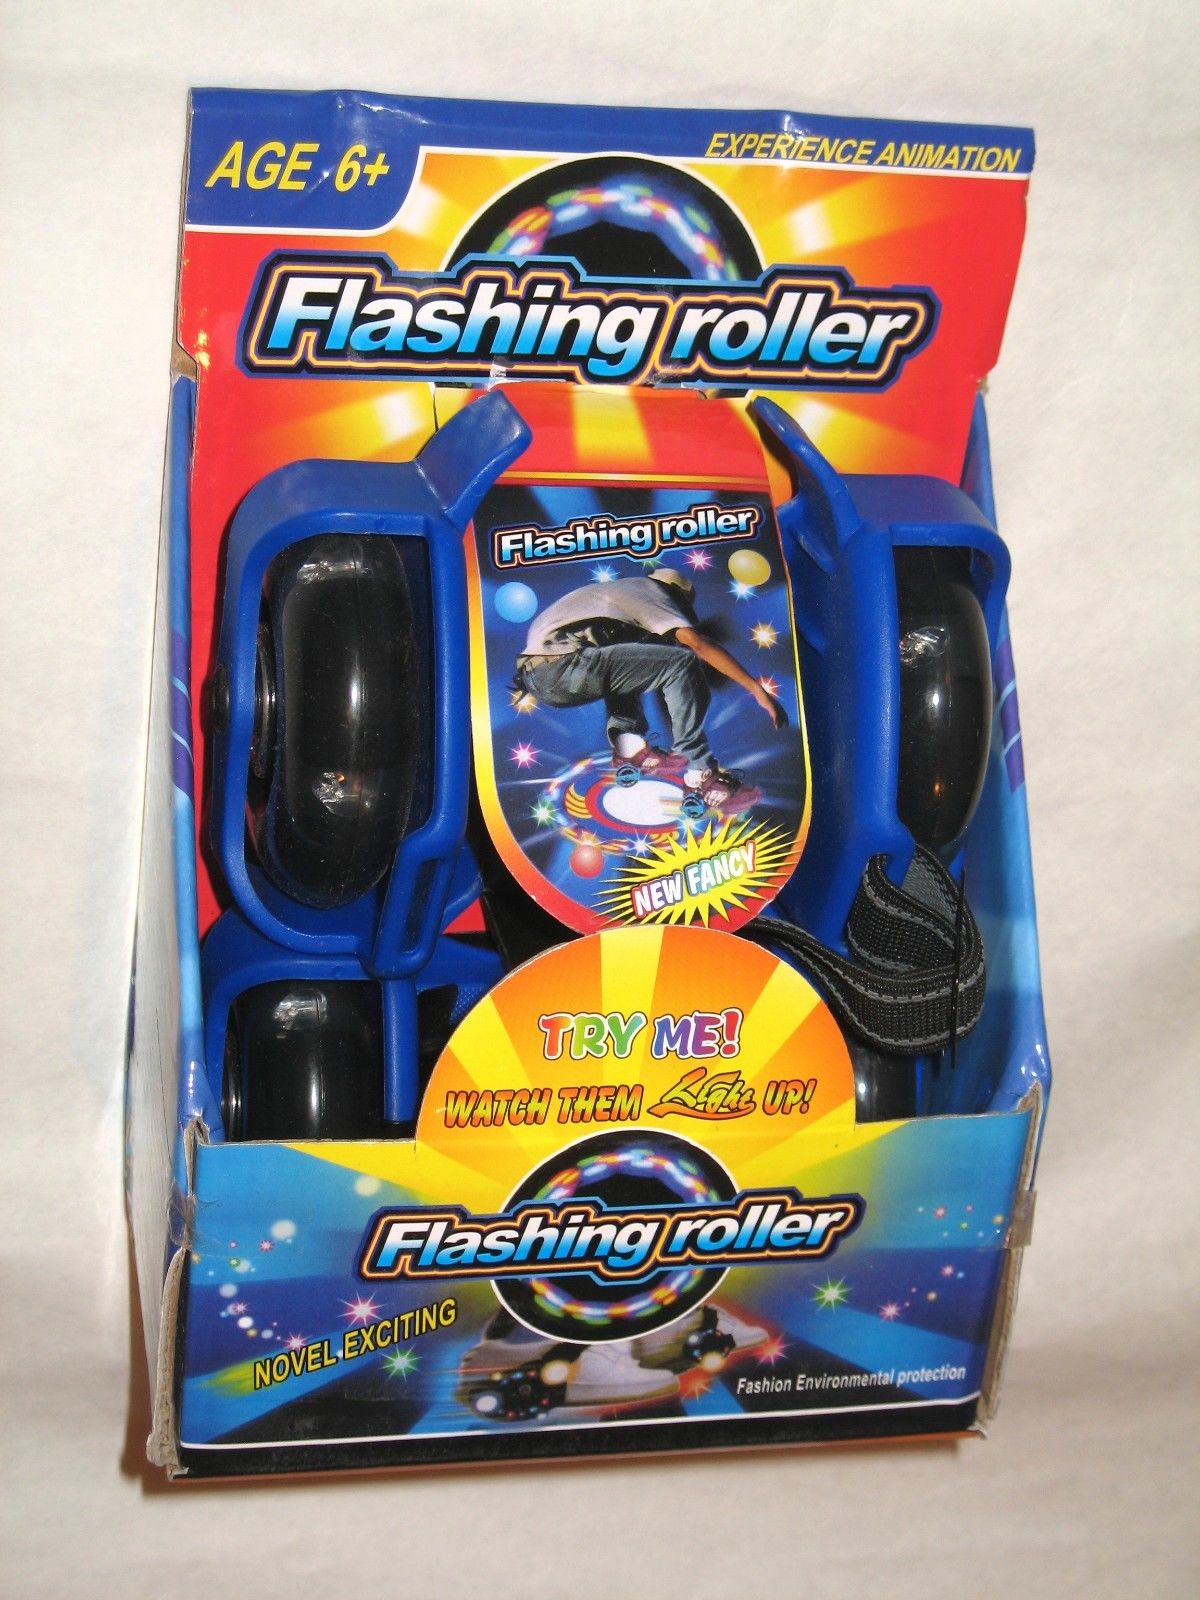 Display flashing roller skate